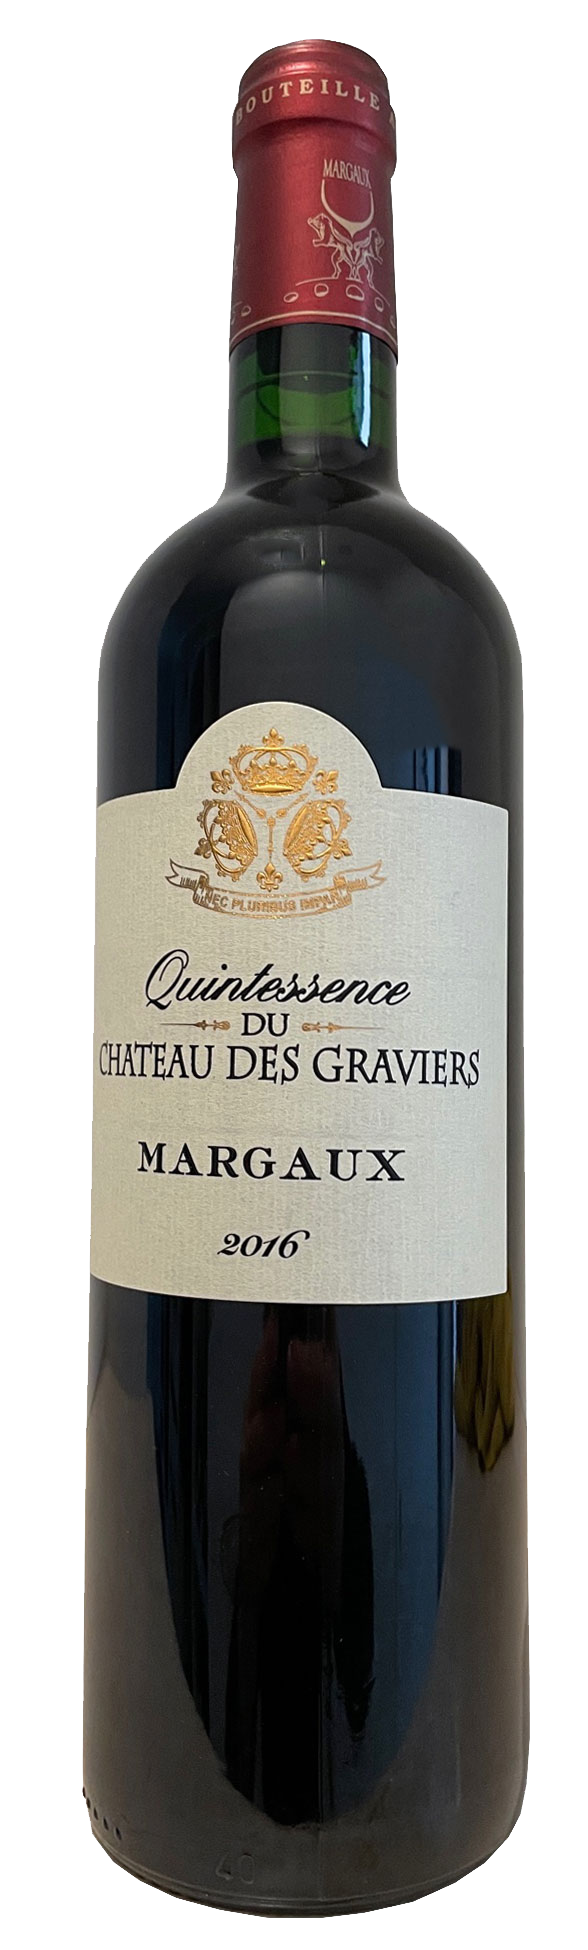  2018 Margaux Cuvee Quintessence, Chateau des Graviers